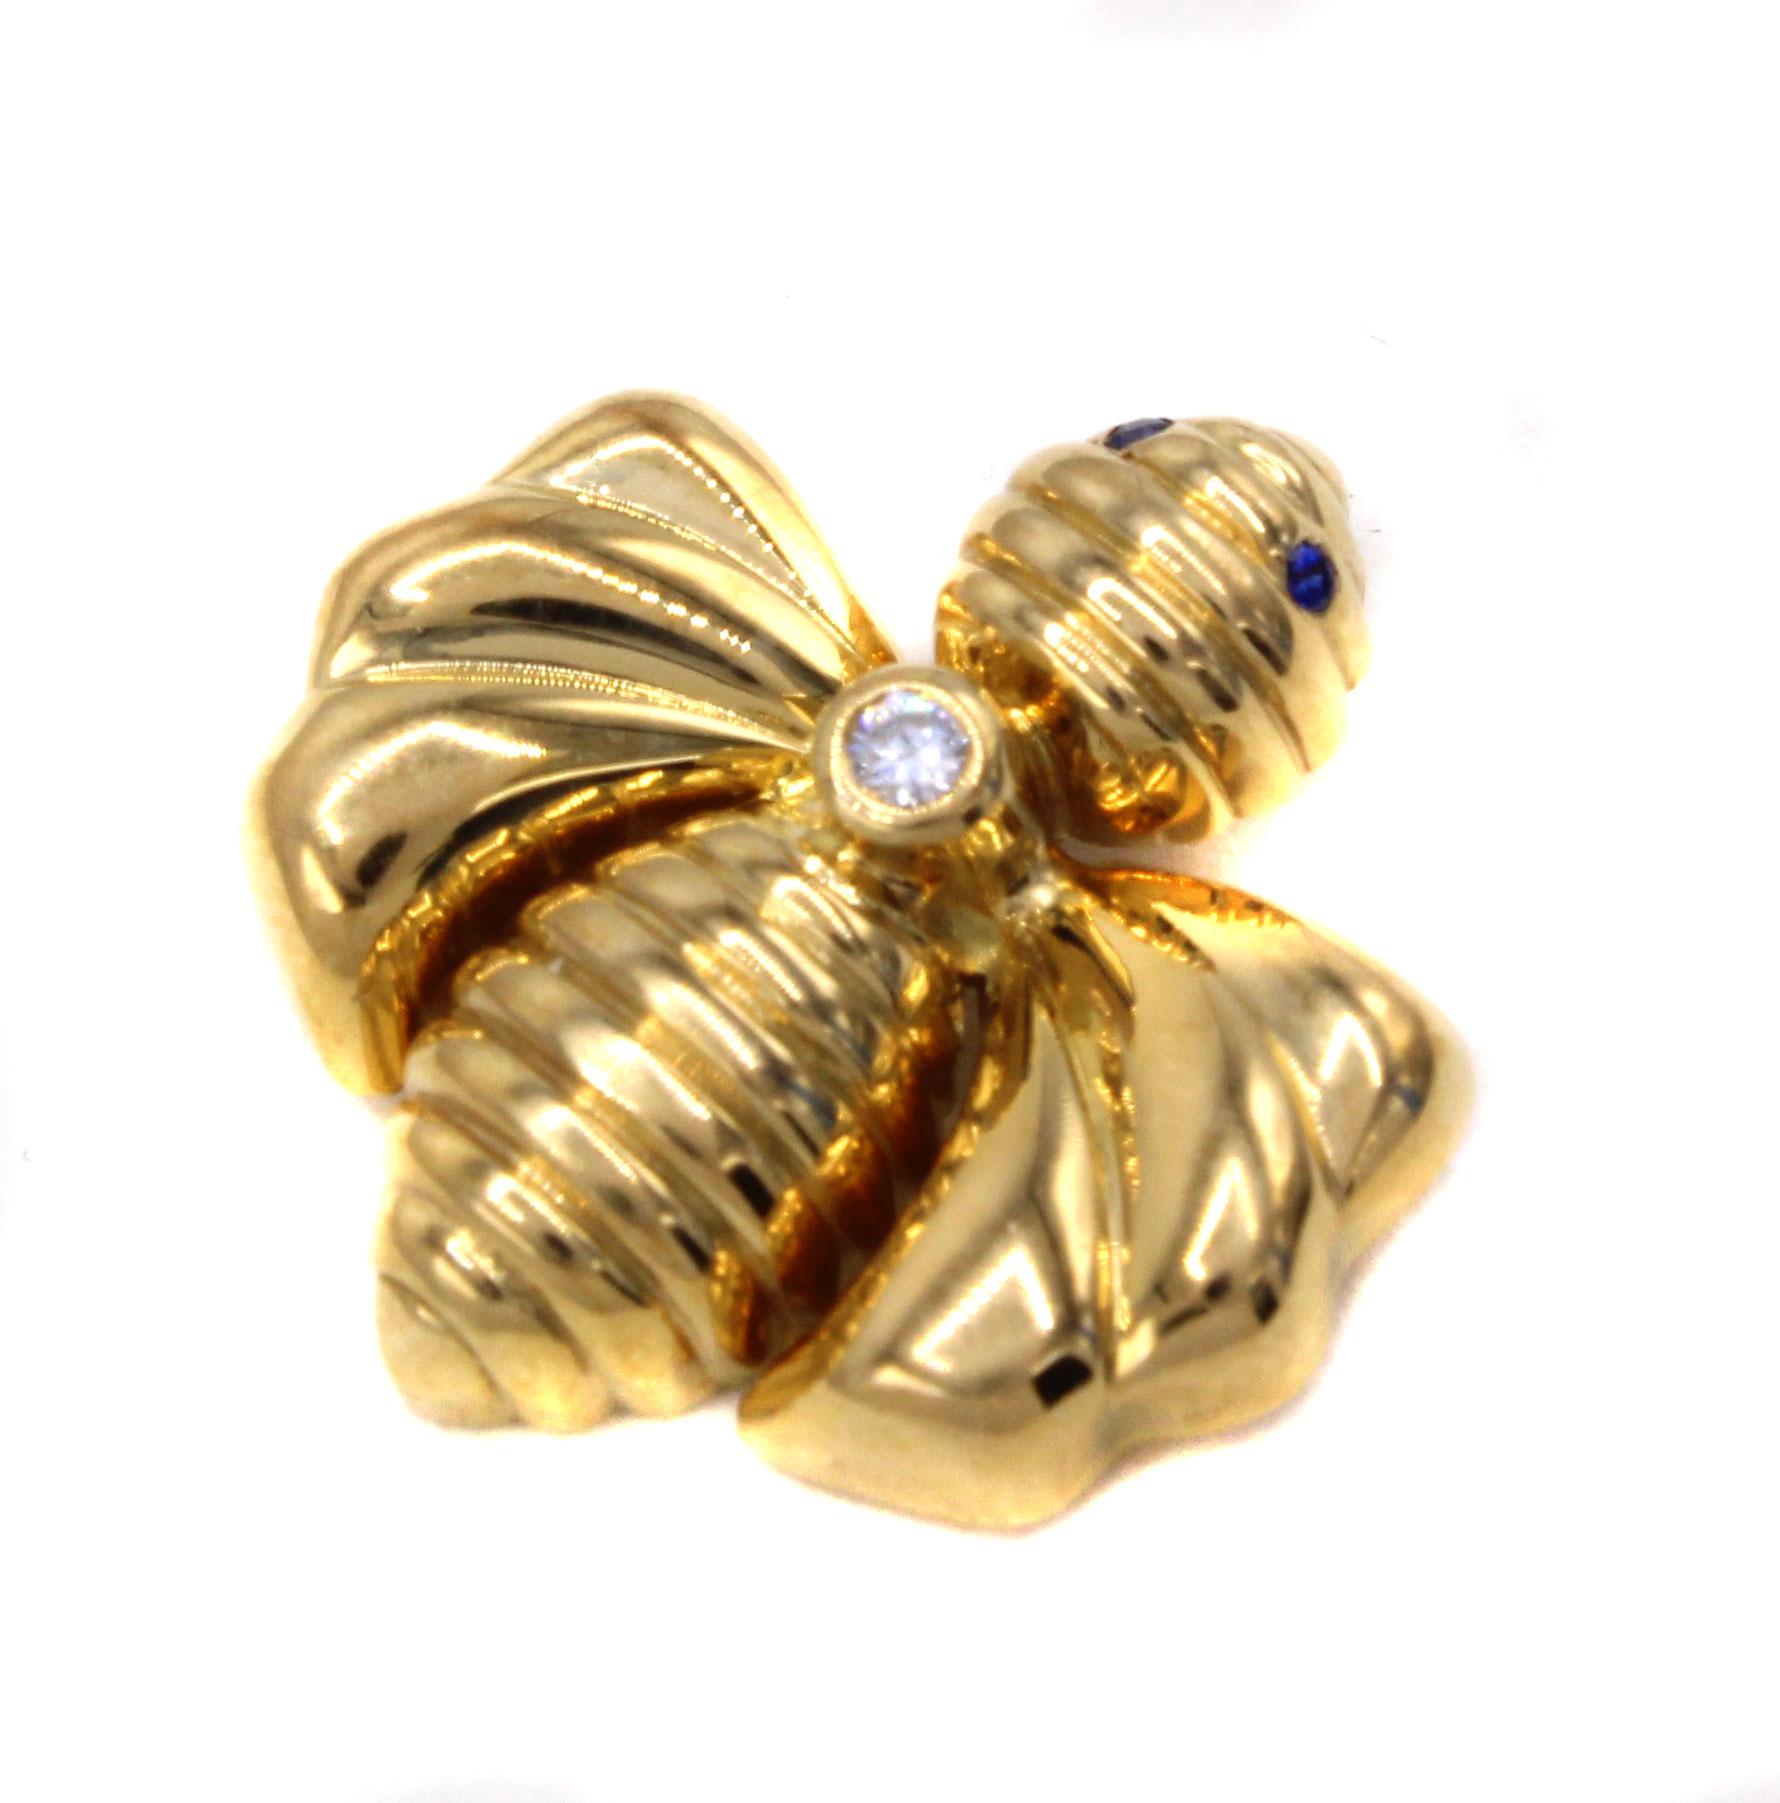 Magnifiquement conçus et fabriqués à la main par le célèbre joaillier français Chaumet, ces pendentifs en or 18 carats représentant un bourdon sont charmants et très agréables à porter. Un diamant blanc brillant est serti entre la tête et le corps